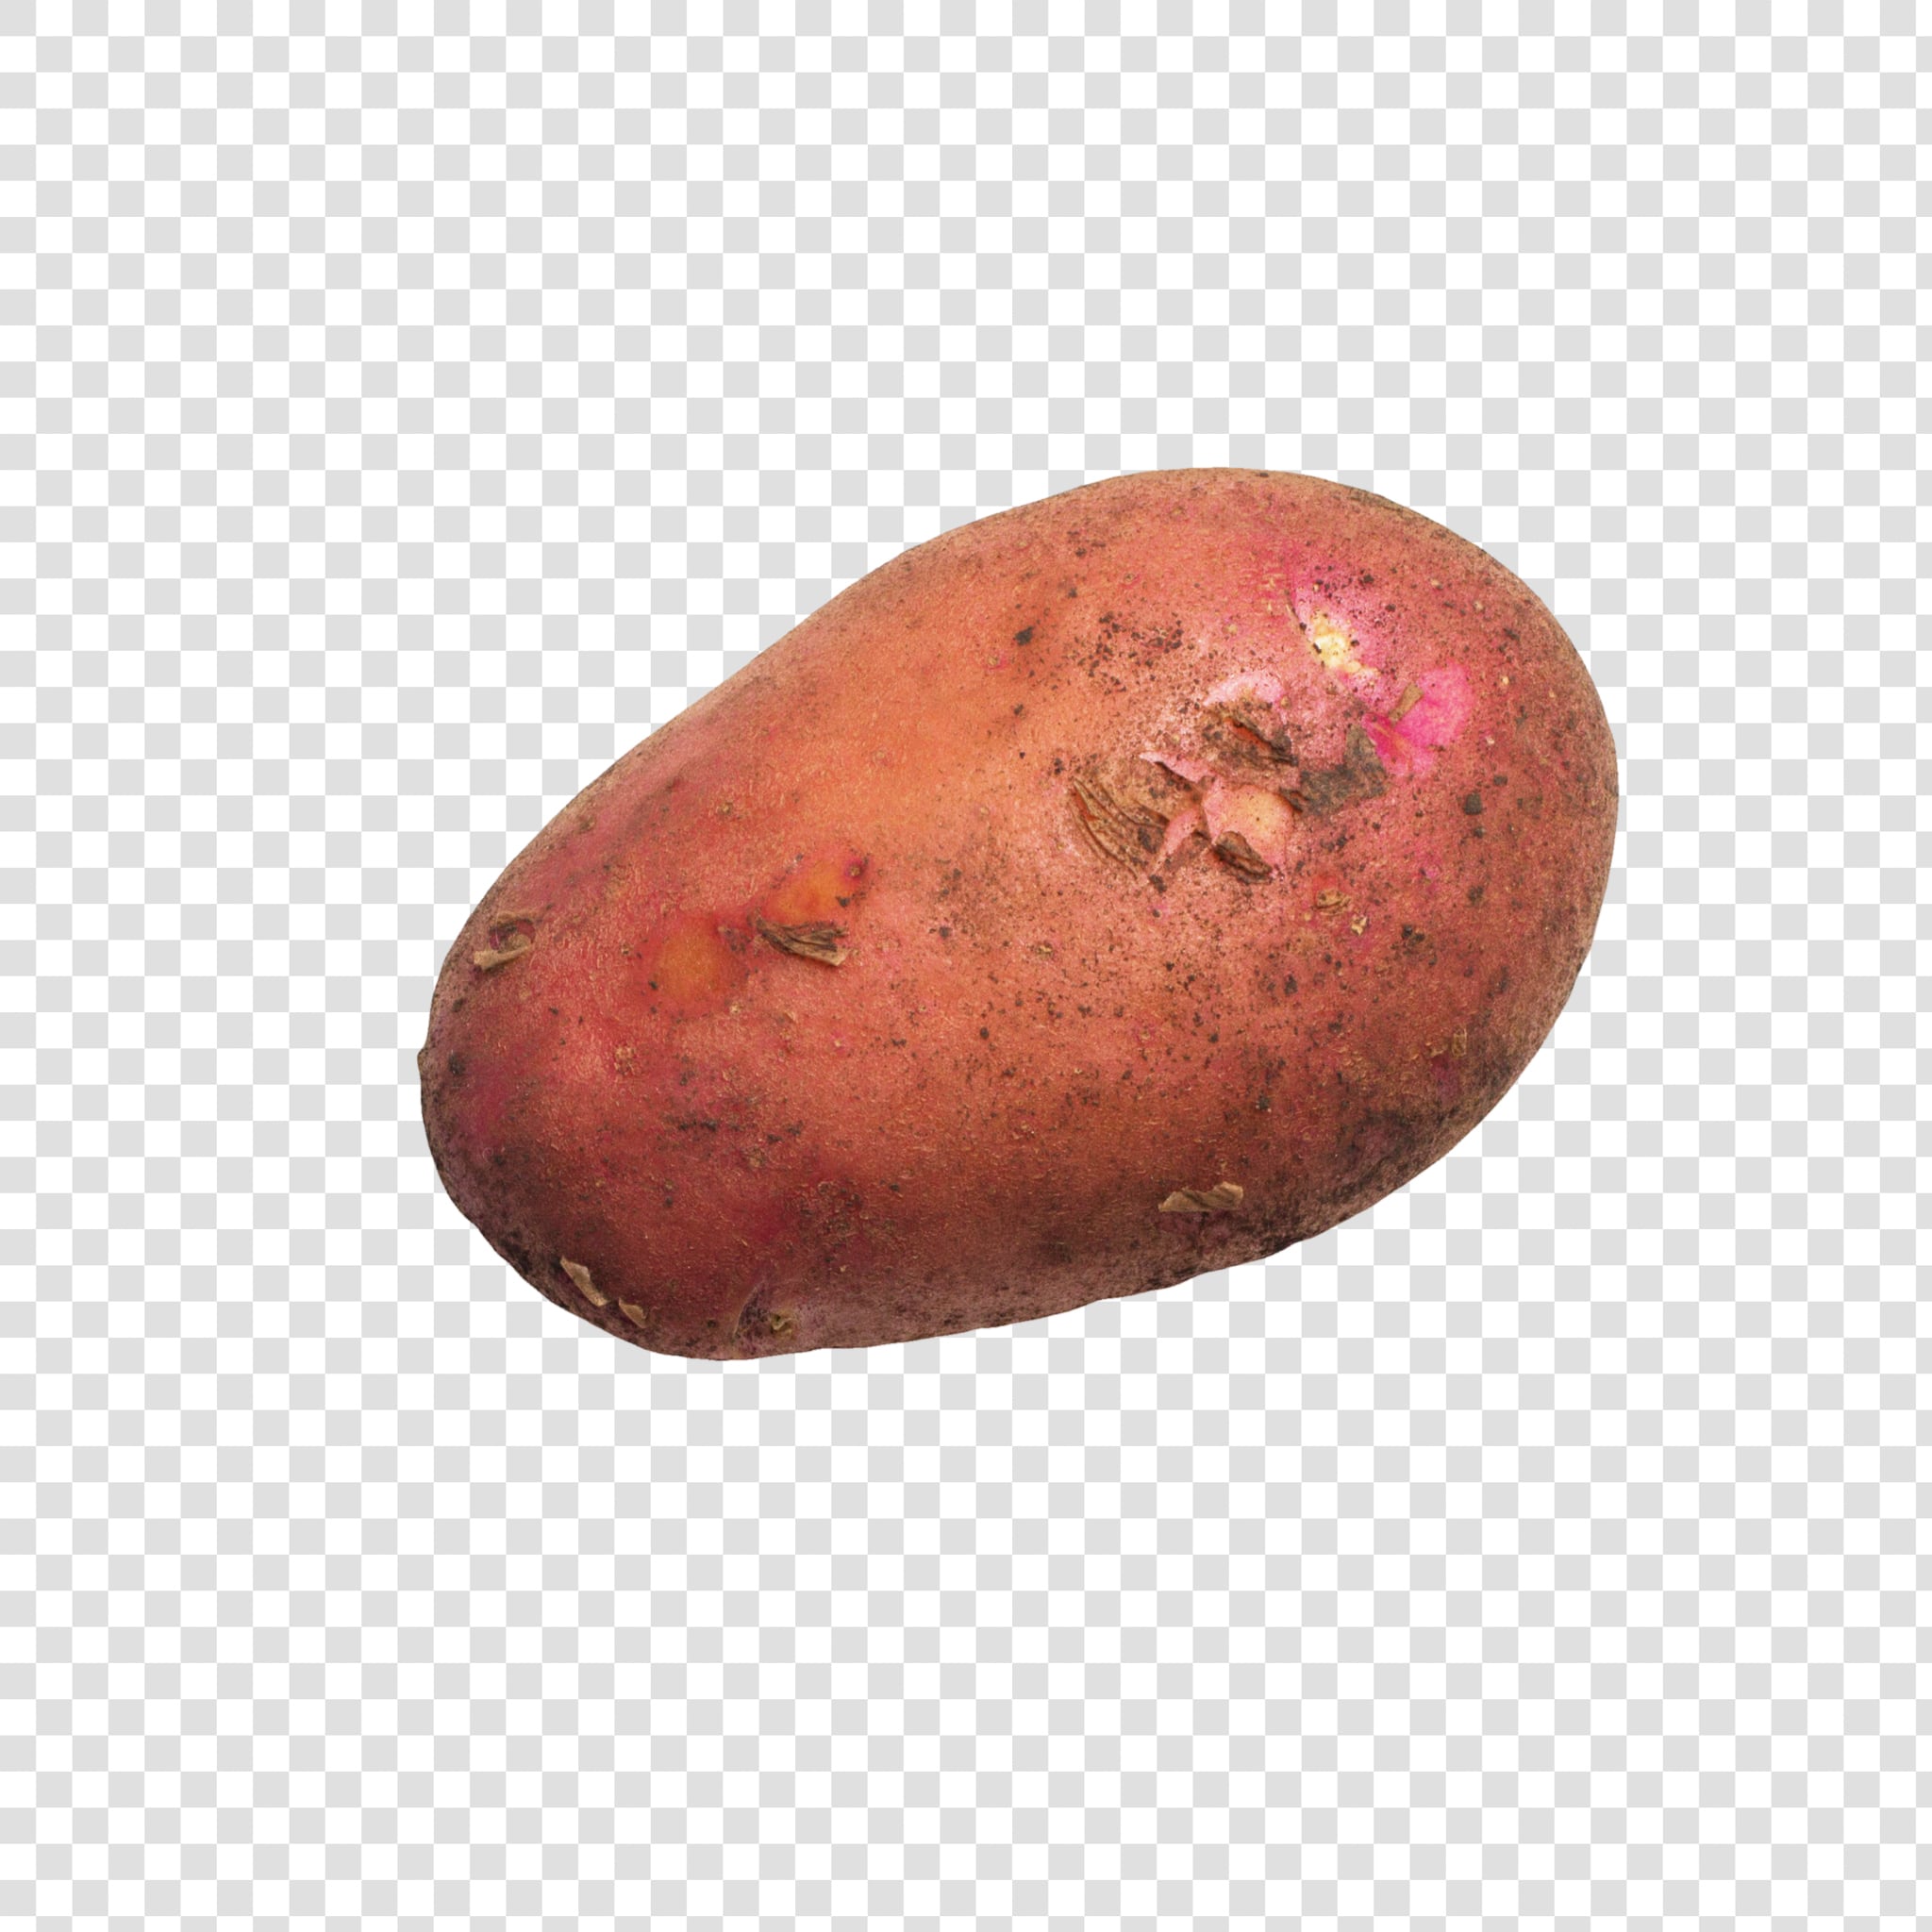 Potato PSD layered image